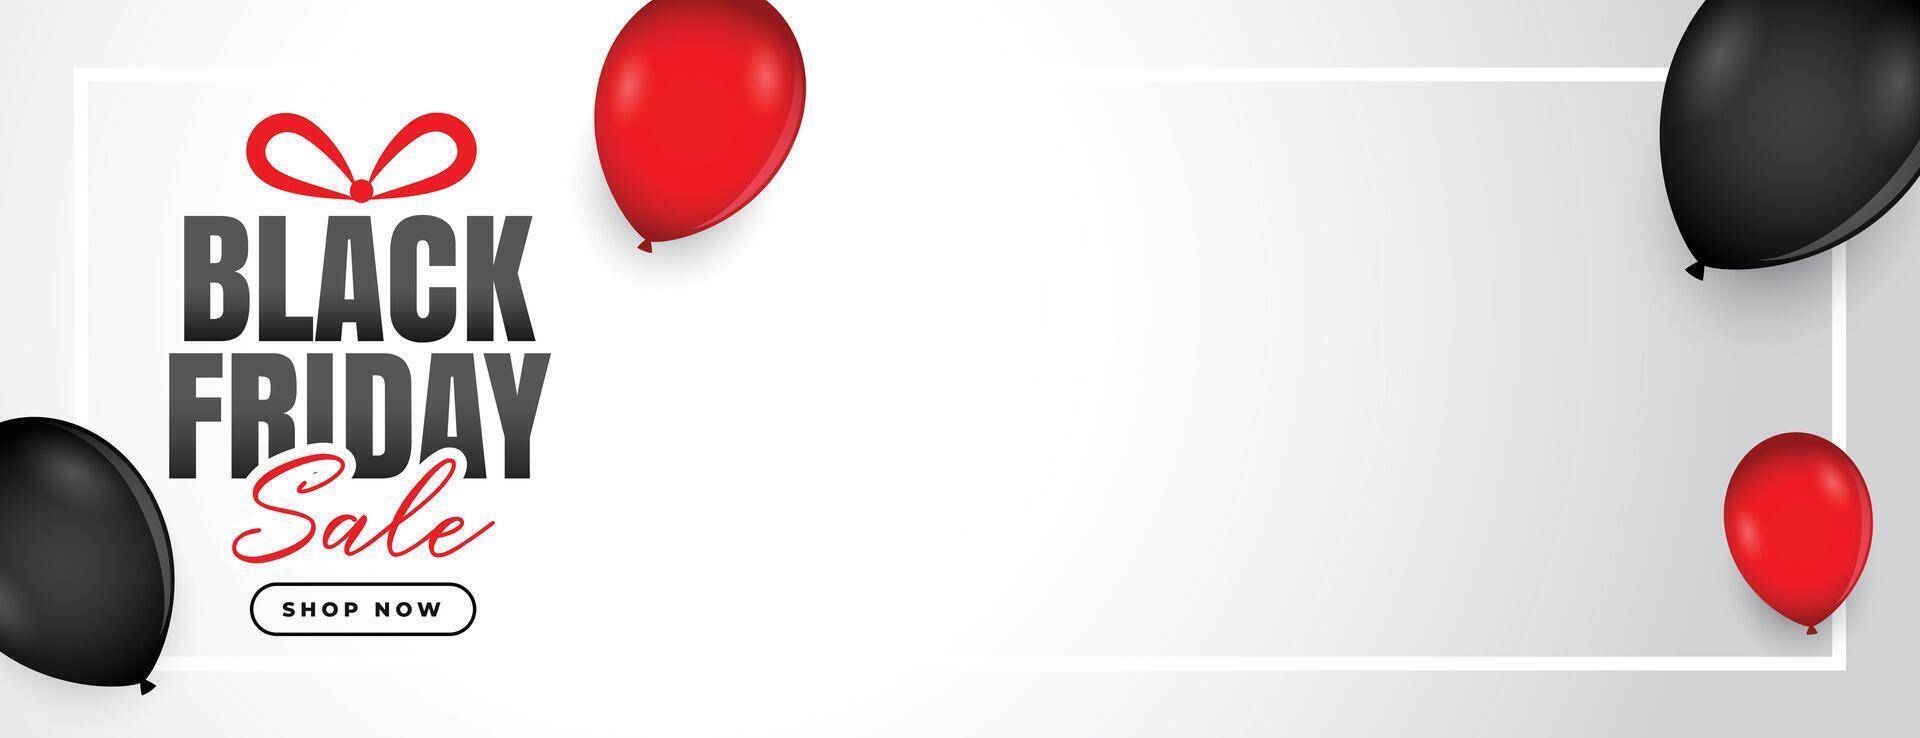 svart fredag försäljning baner med ballonger och text Plats vektor